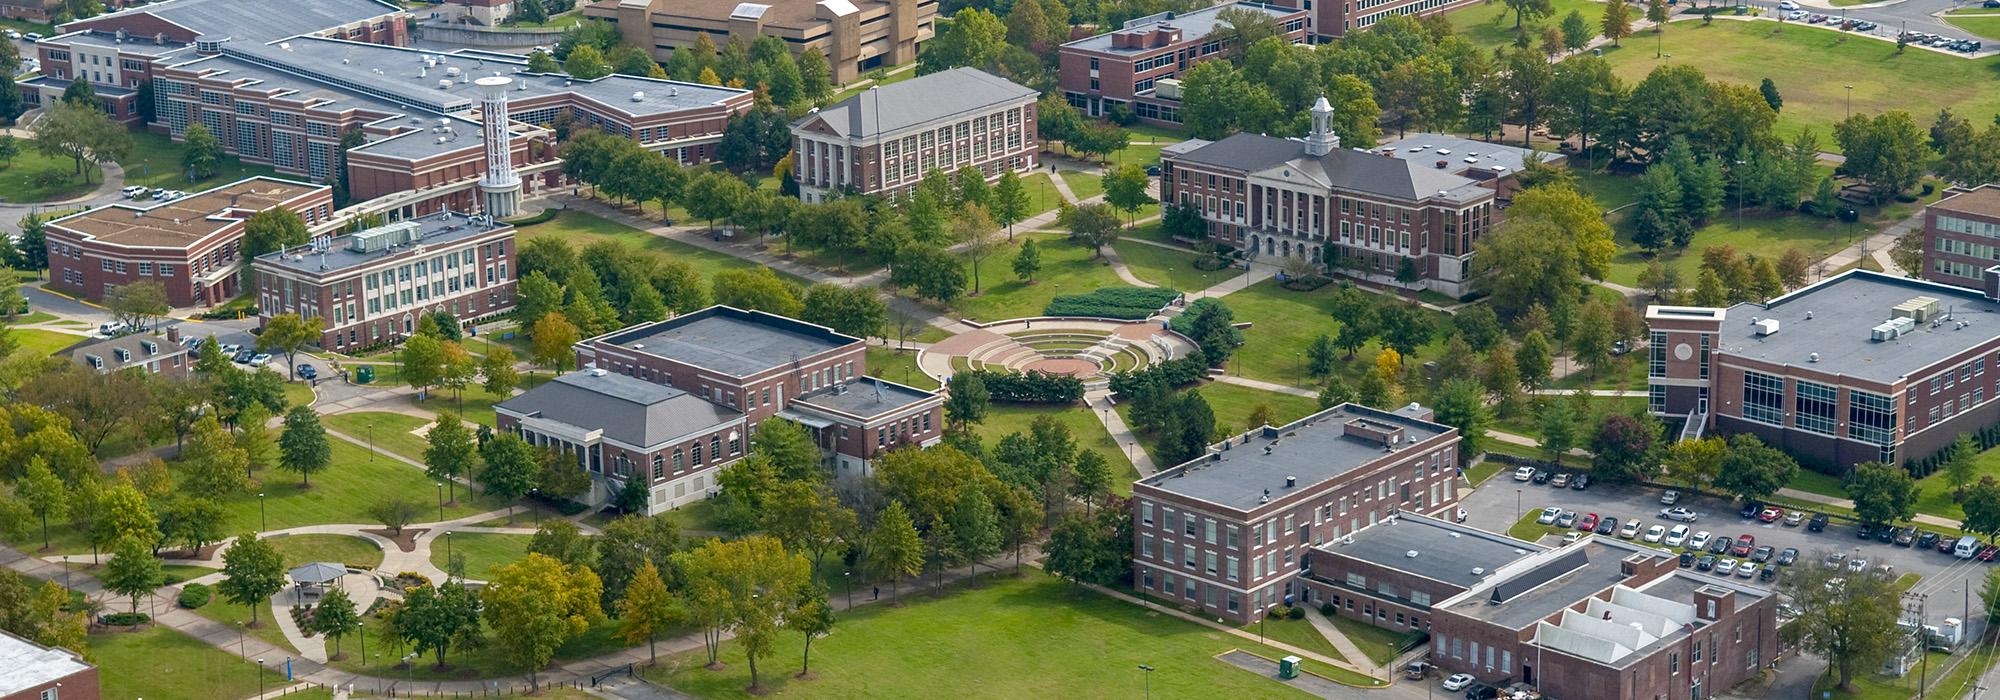 Tennessee State University, Nashville, TN